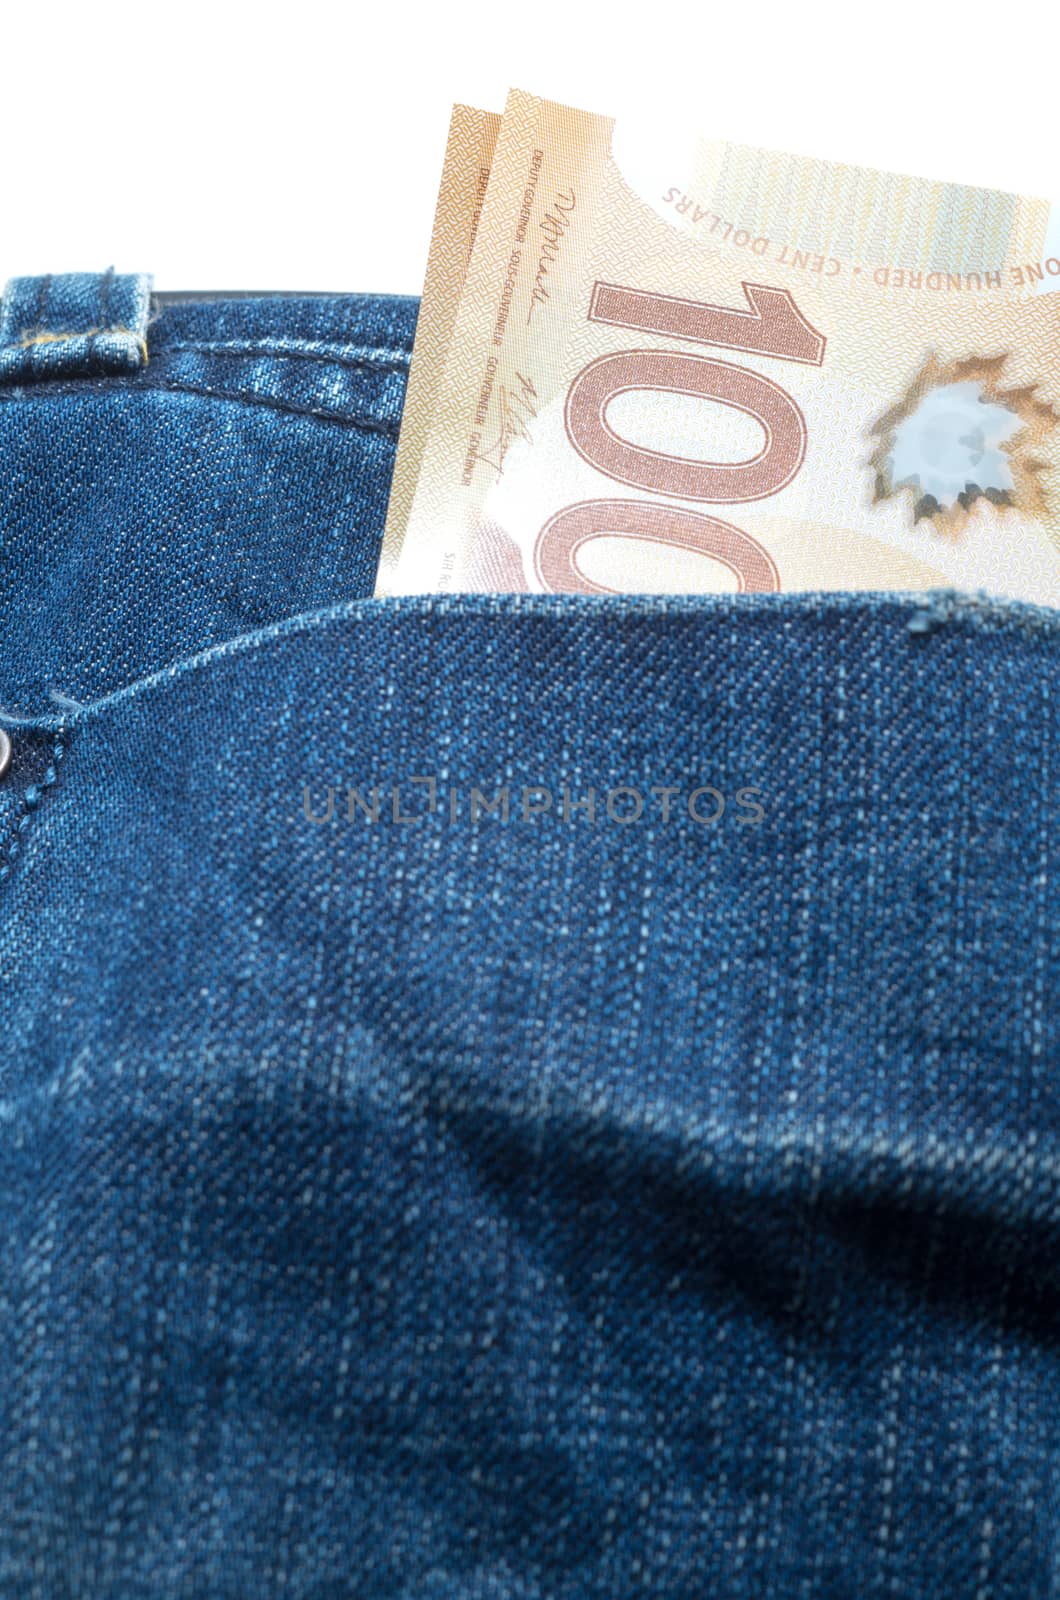 Canadian 100 dollar in back pocket by daoleduc